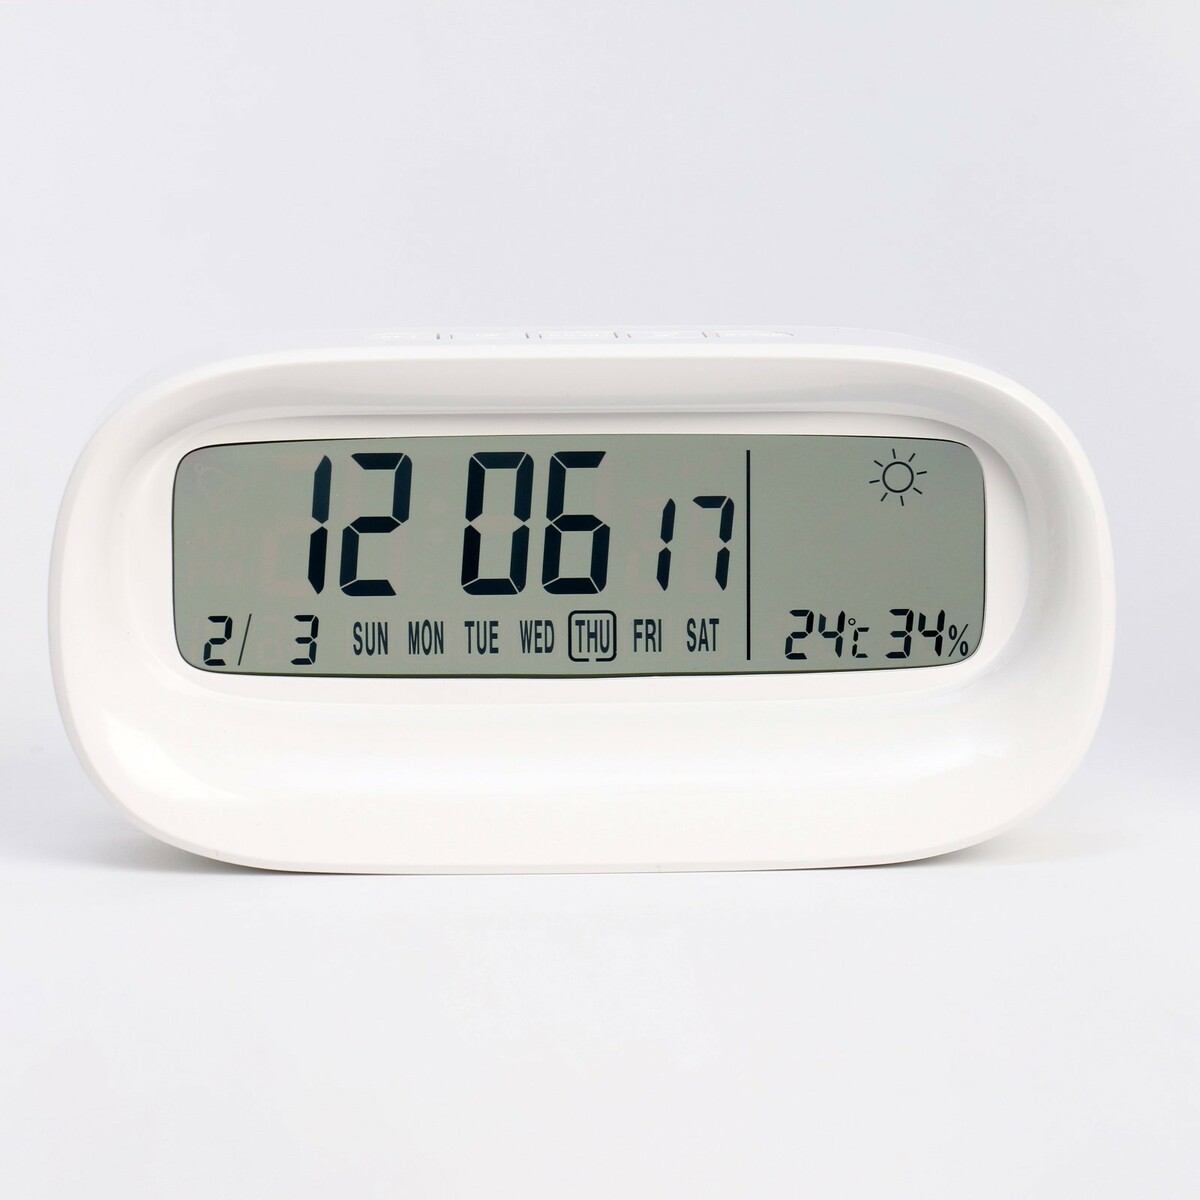 Часы - будильник электронные настольные c термометром, гигрометром, 7 х 14.5 см, 2ааа часы электронные настольные c термометром гигрометром 7 х 14 5 х 4 см